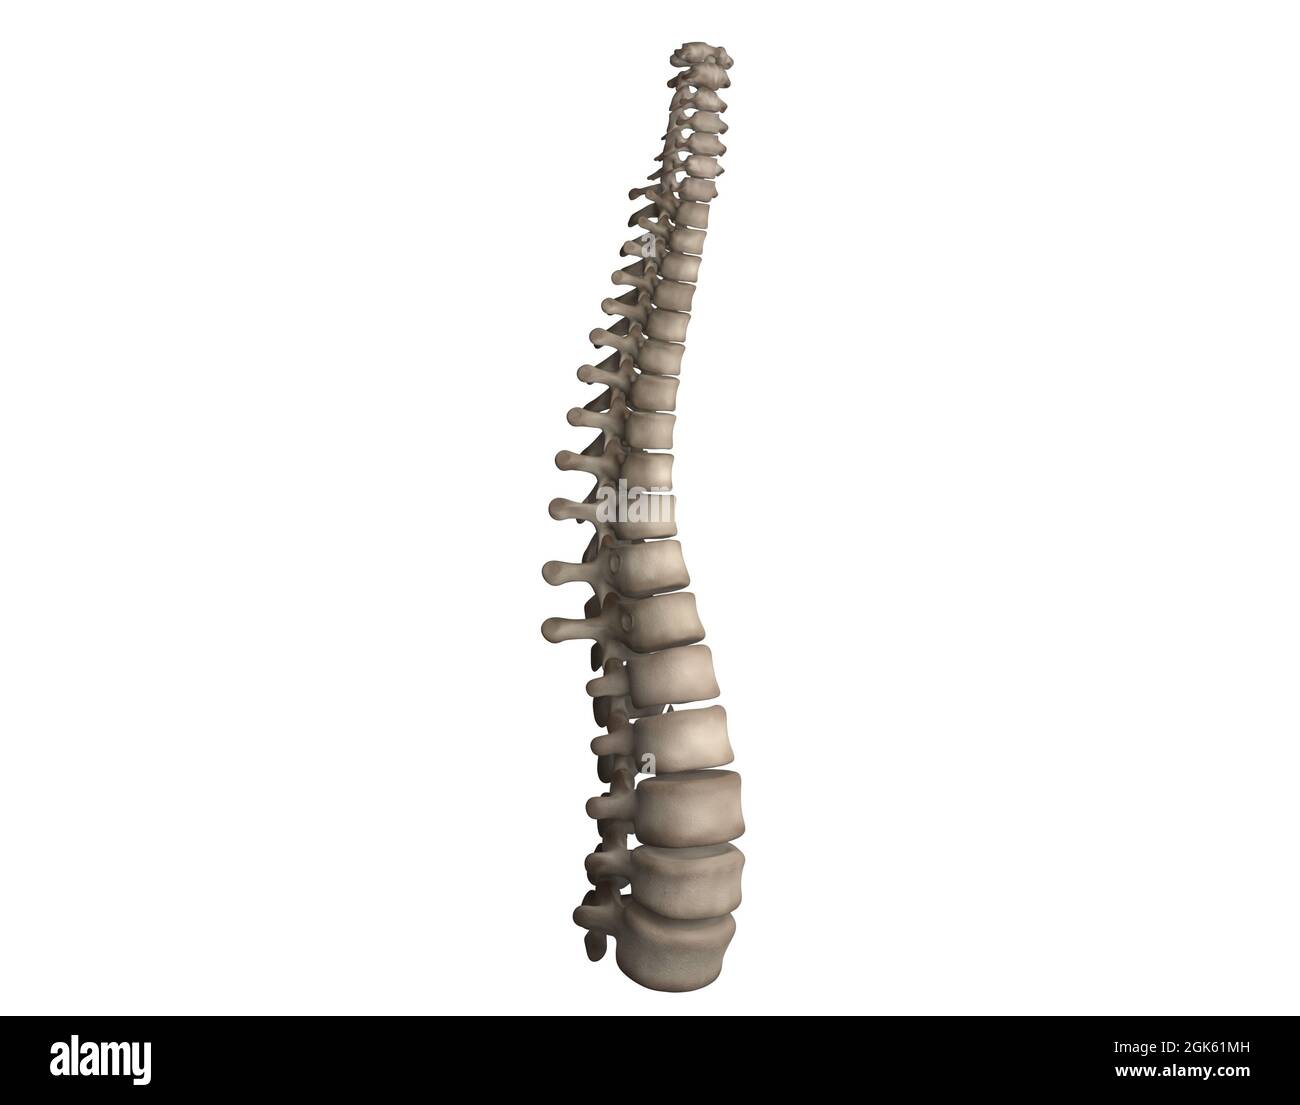 Spine diagram including all 24 vertebrae Stock Photo